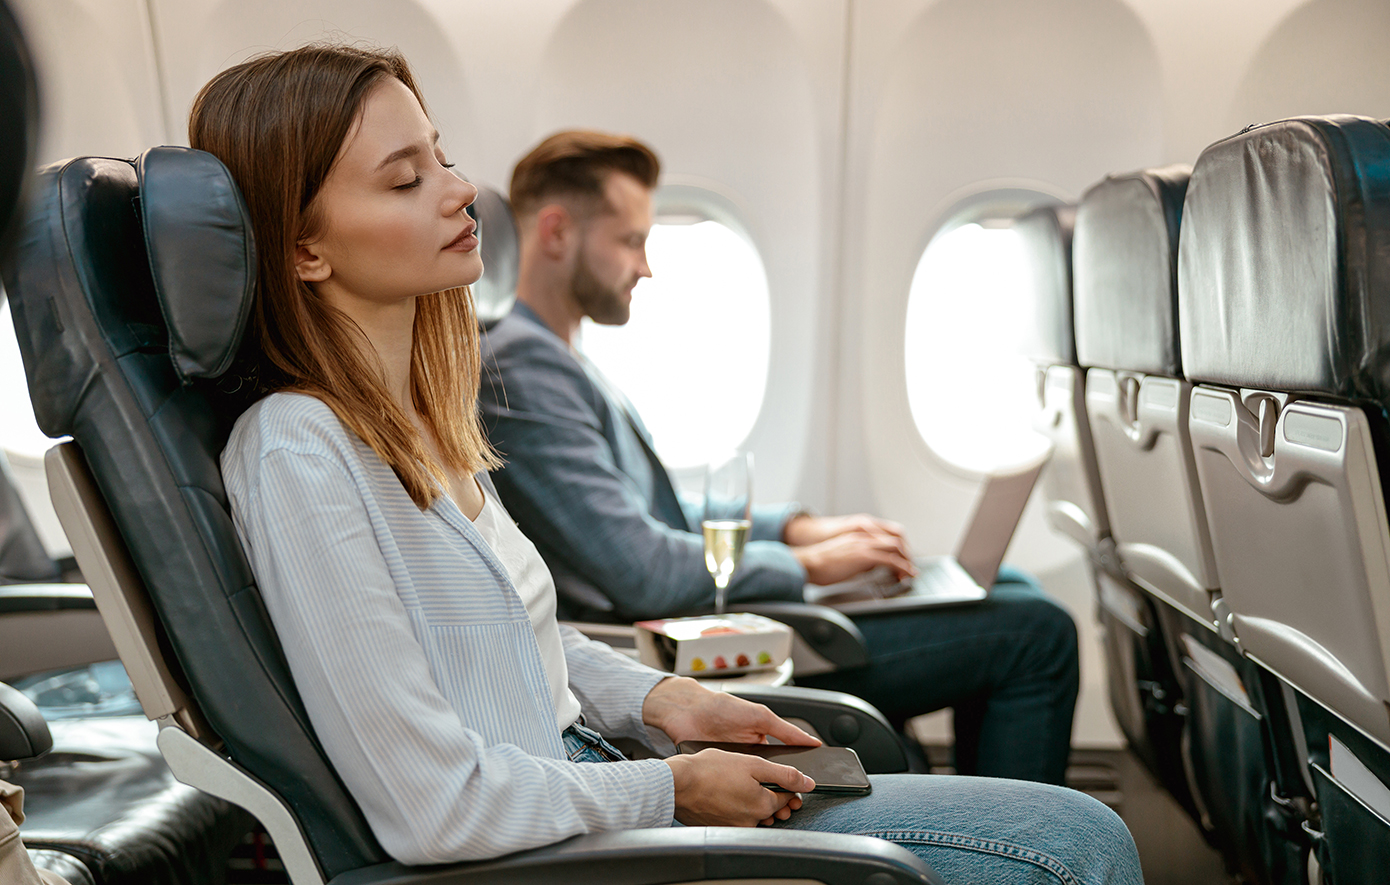 Πώς να σας πάρει ο ύπνος στο αεροπλάνο στο πι και φι με ένα εύκολο κόλπο